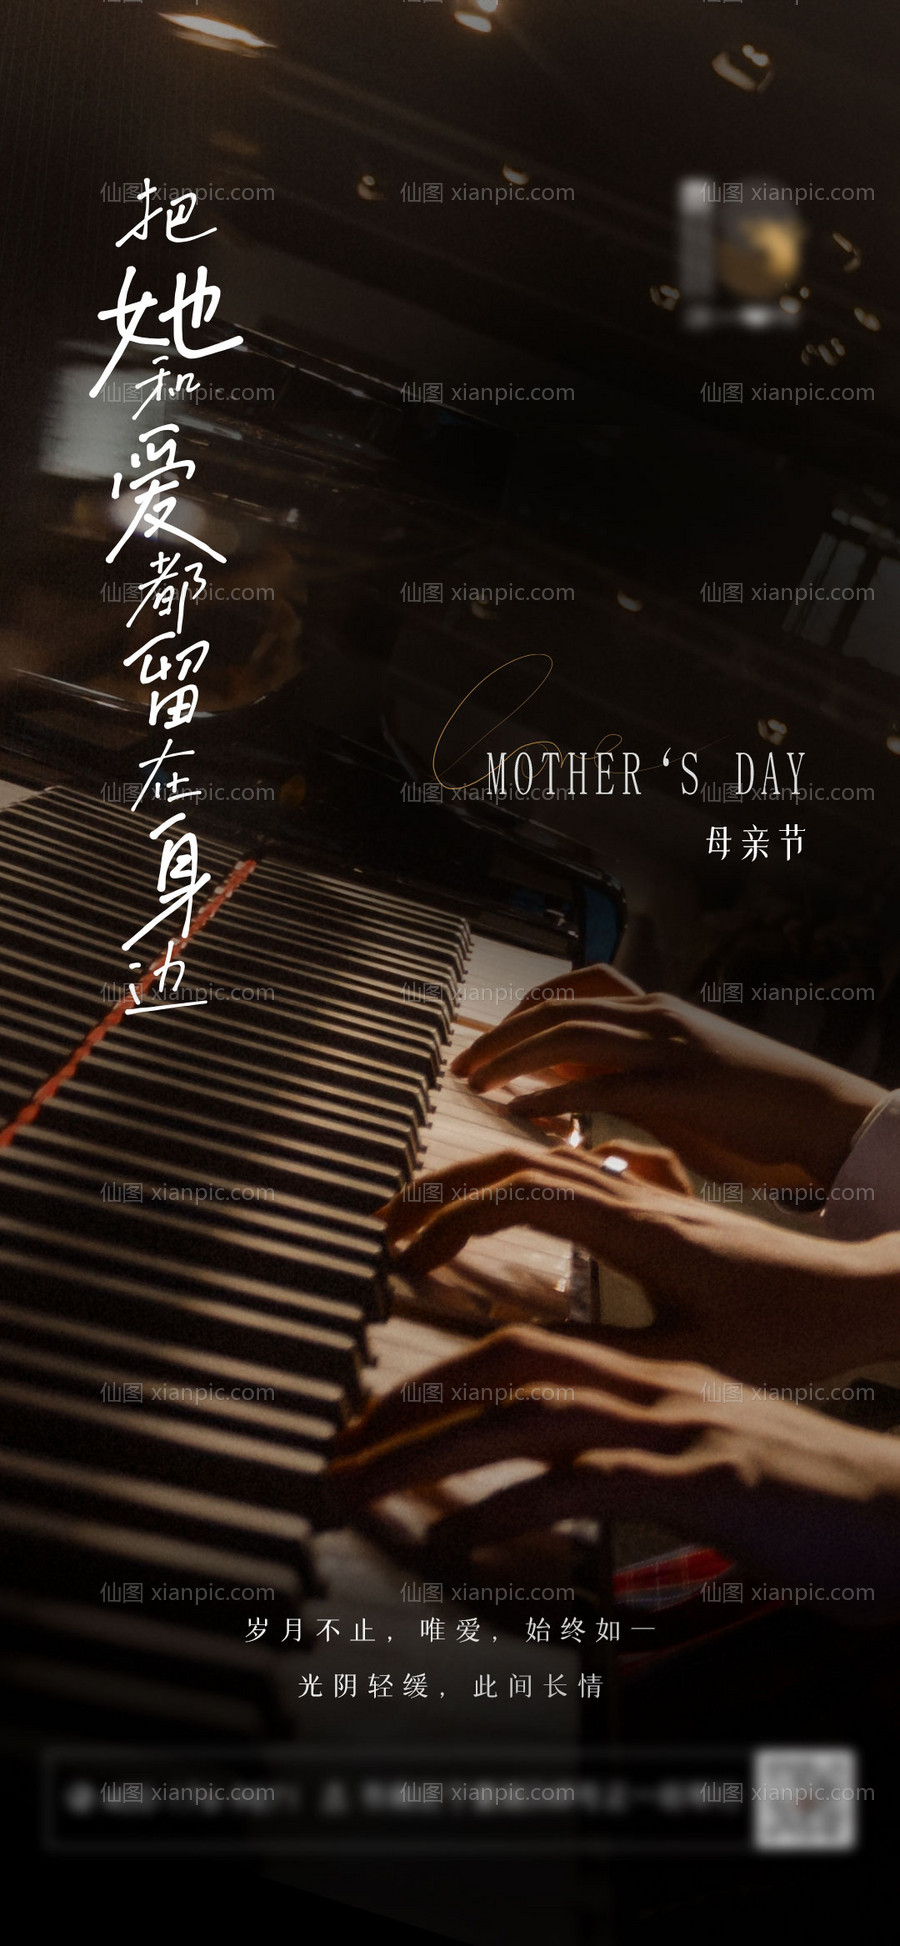 素材乐-文艺钢琴演奏母亲节音乐海报